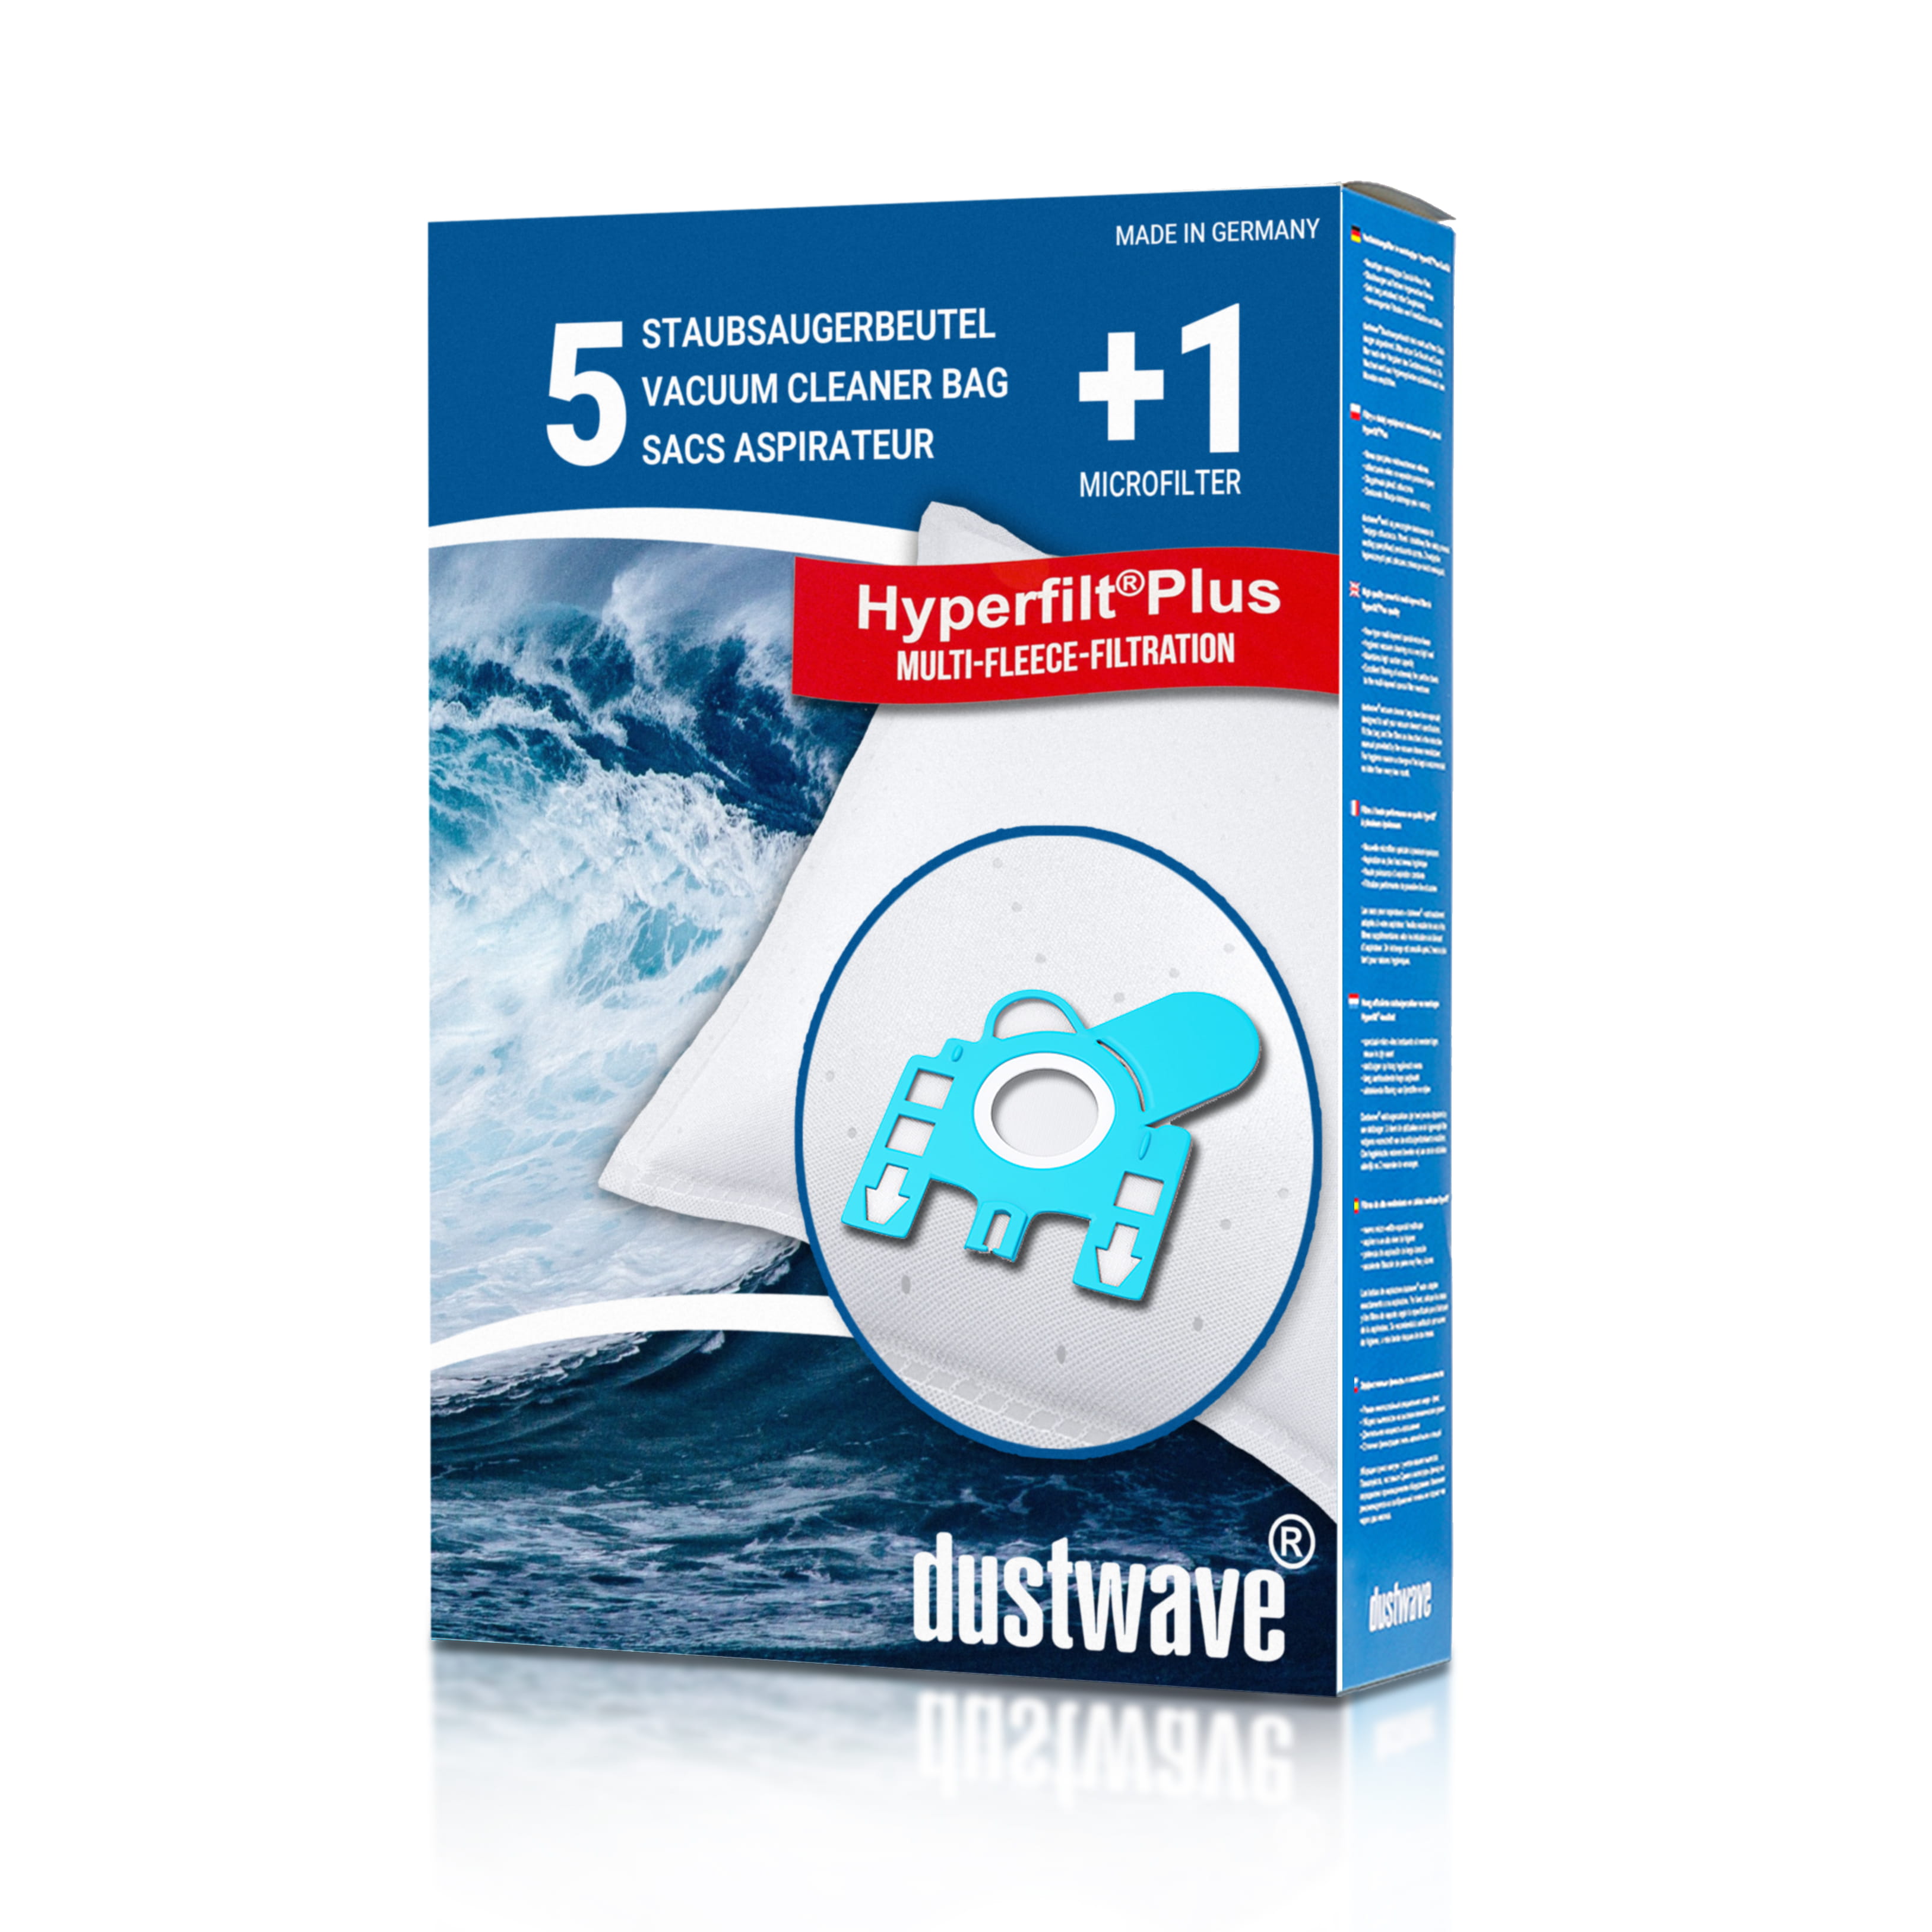 Dustwave® 5 Staubsaugerbeutel für Miele Xtra Care - hocheffizient, mehrlagiges Mikrovlies mit Hygieneverschluss - Made in Germany